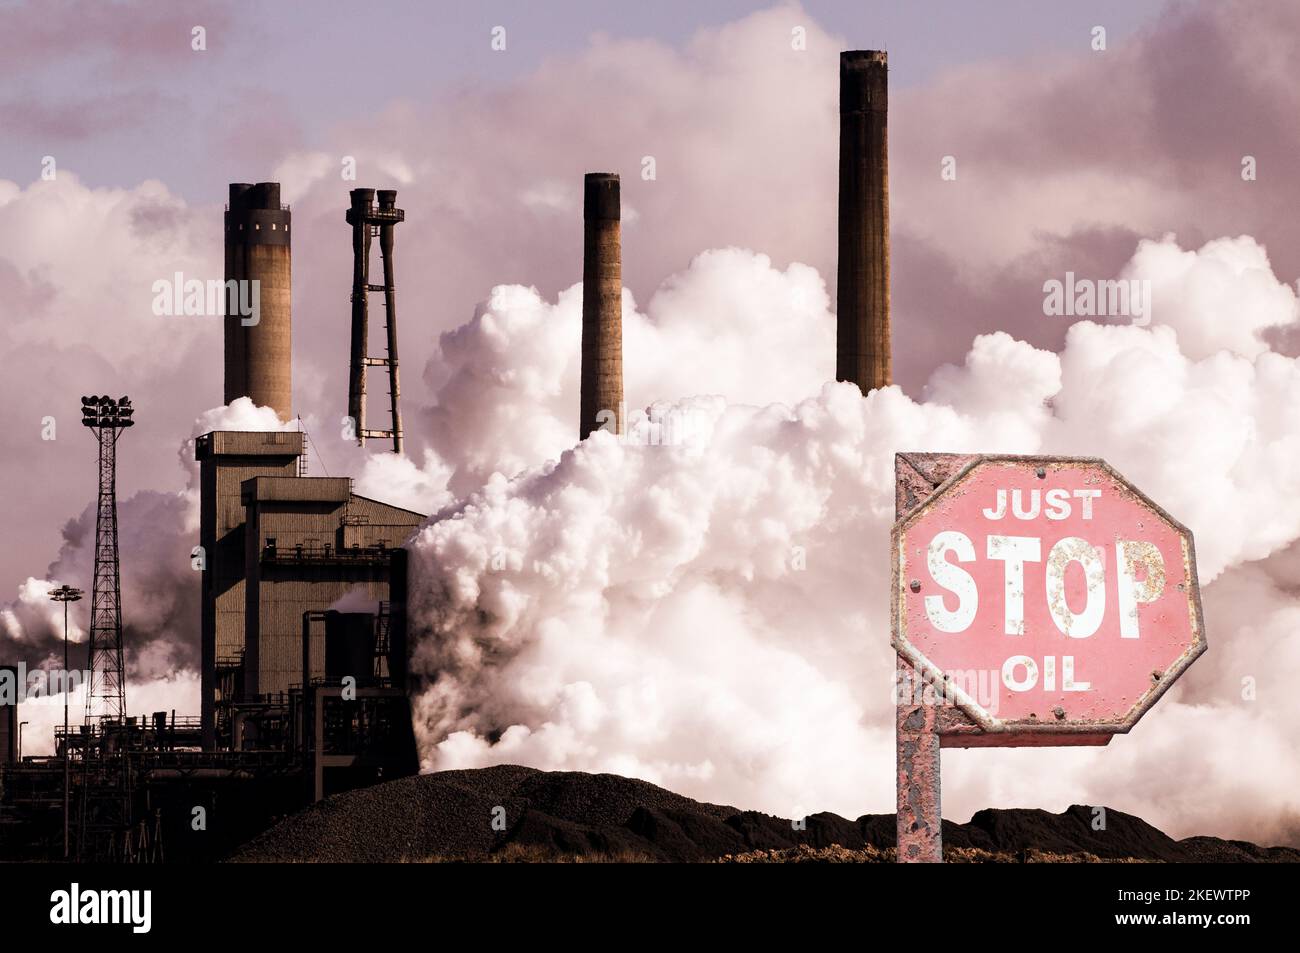 Stop Oil Schild in der Nähe Stahlwerk Hochofen. Globale Erwärmung, Klimakrise, fossile Brennstoffe, Netto-Null, Energiekrise...Konzept Stockfoto